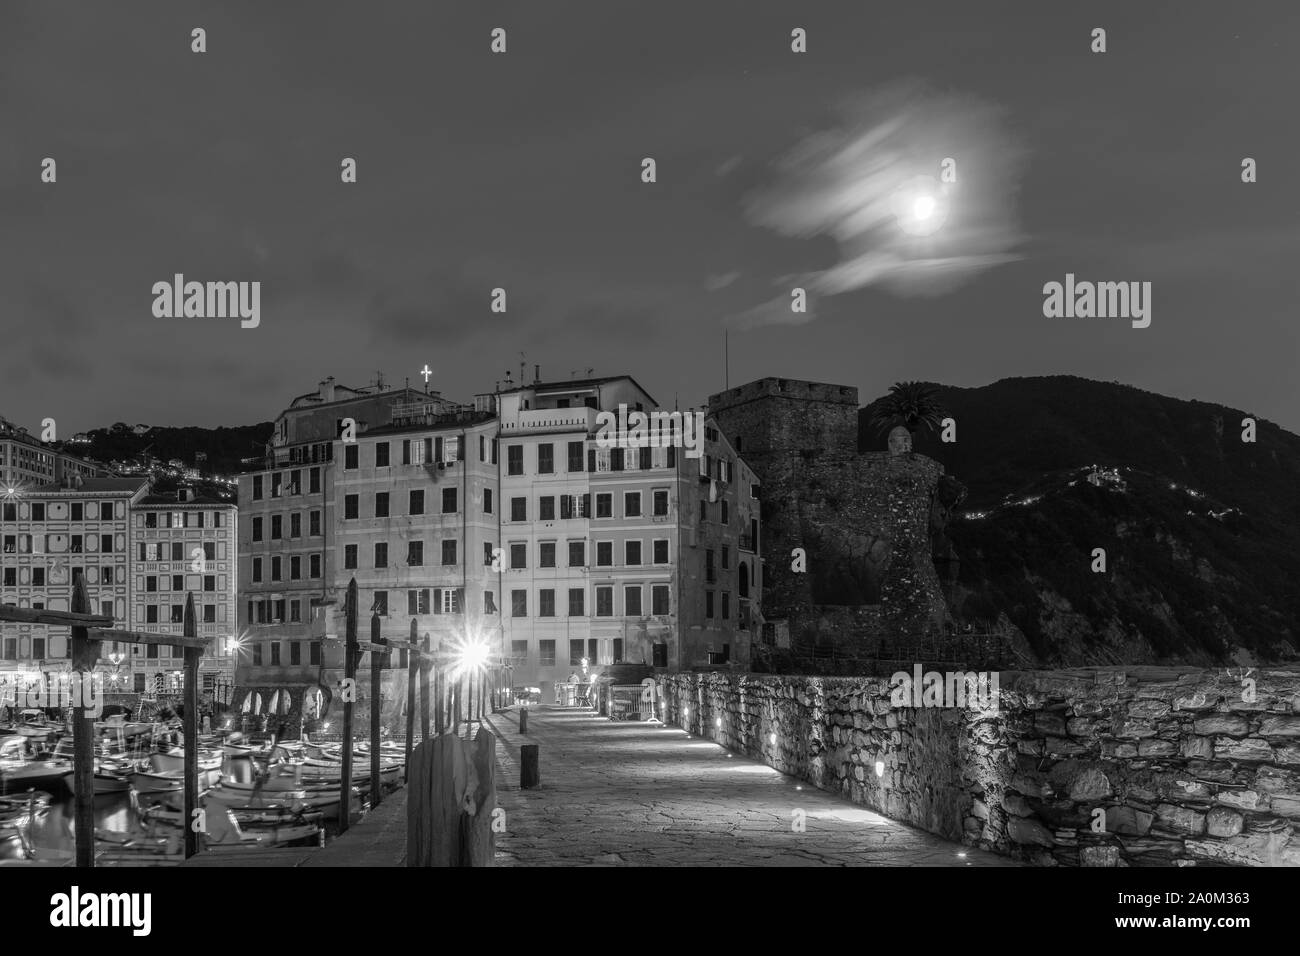 Monochrom von Camogli direkt am Meer bei Nacht, Camogli, Ligurien, Italien 2019 Stockfoto